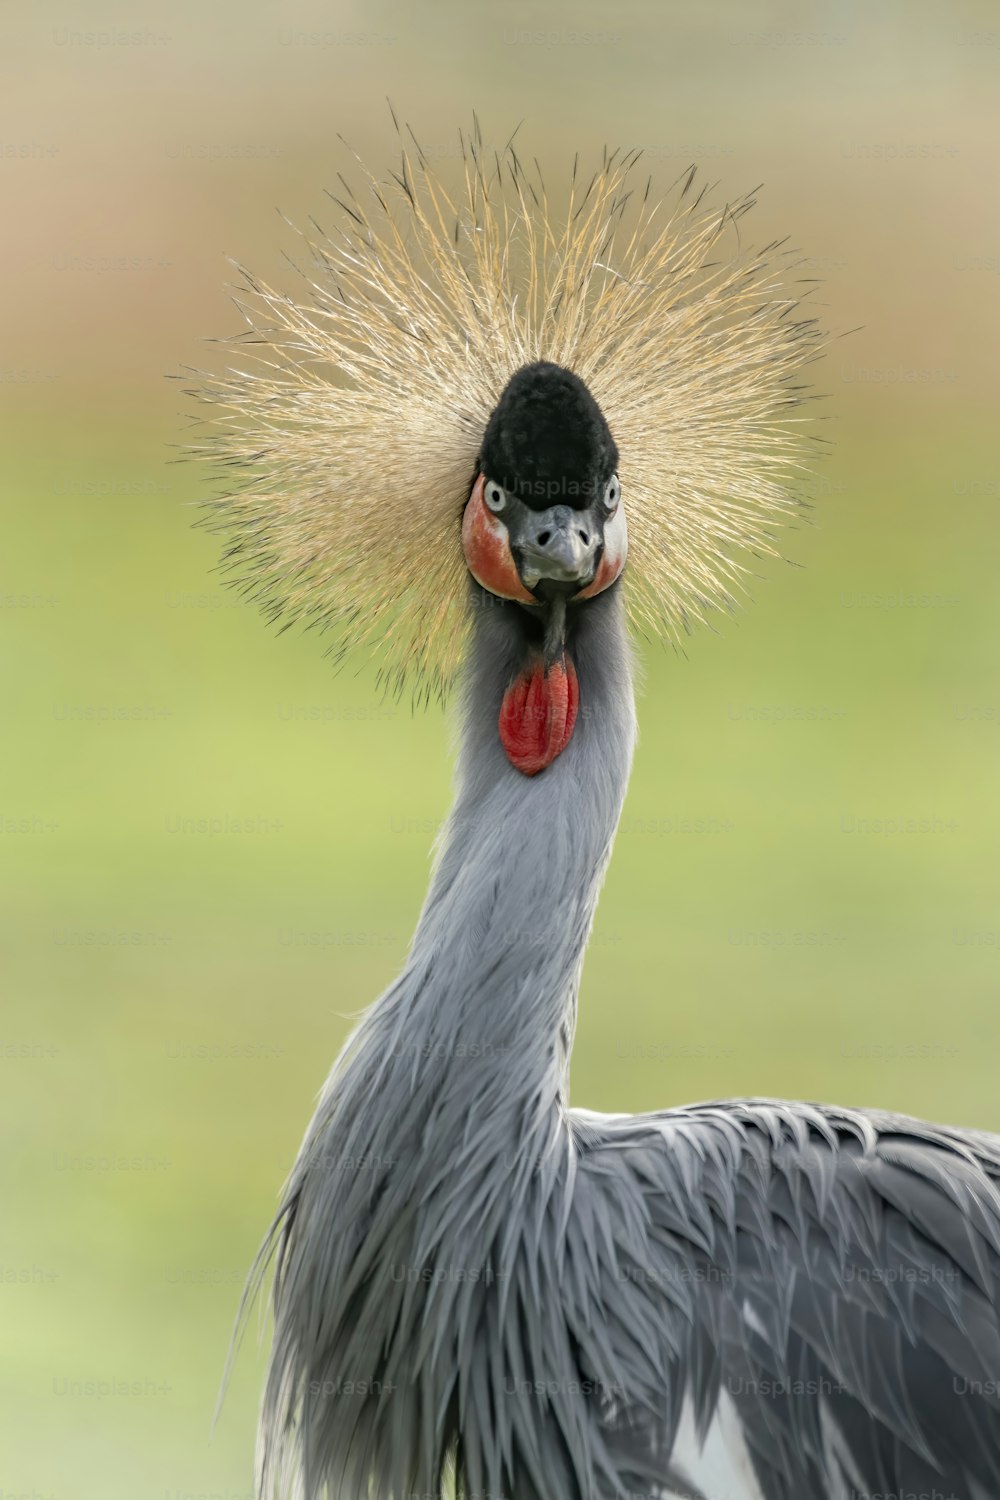 Retrato de una hermosa grulla coronada negra, o de perfil de grulla crestada negra (Balearica pavonina). Ave nacional de Nigeria. Fondo verde.